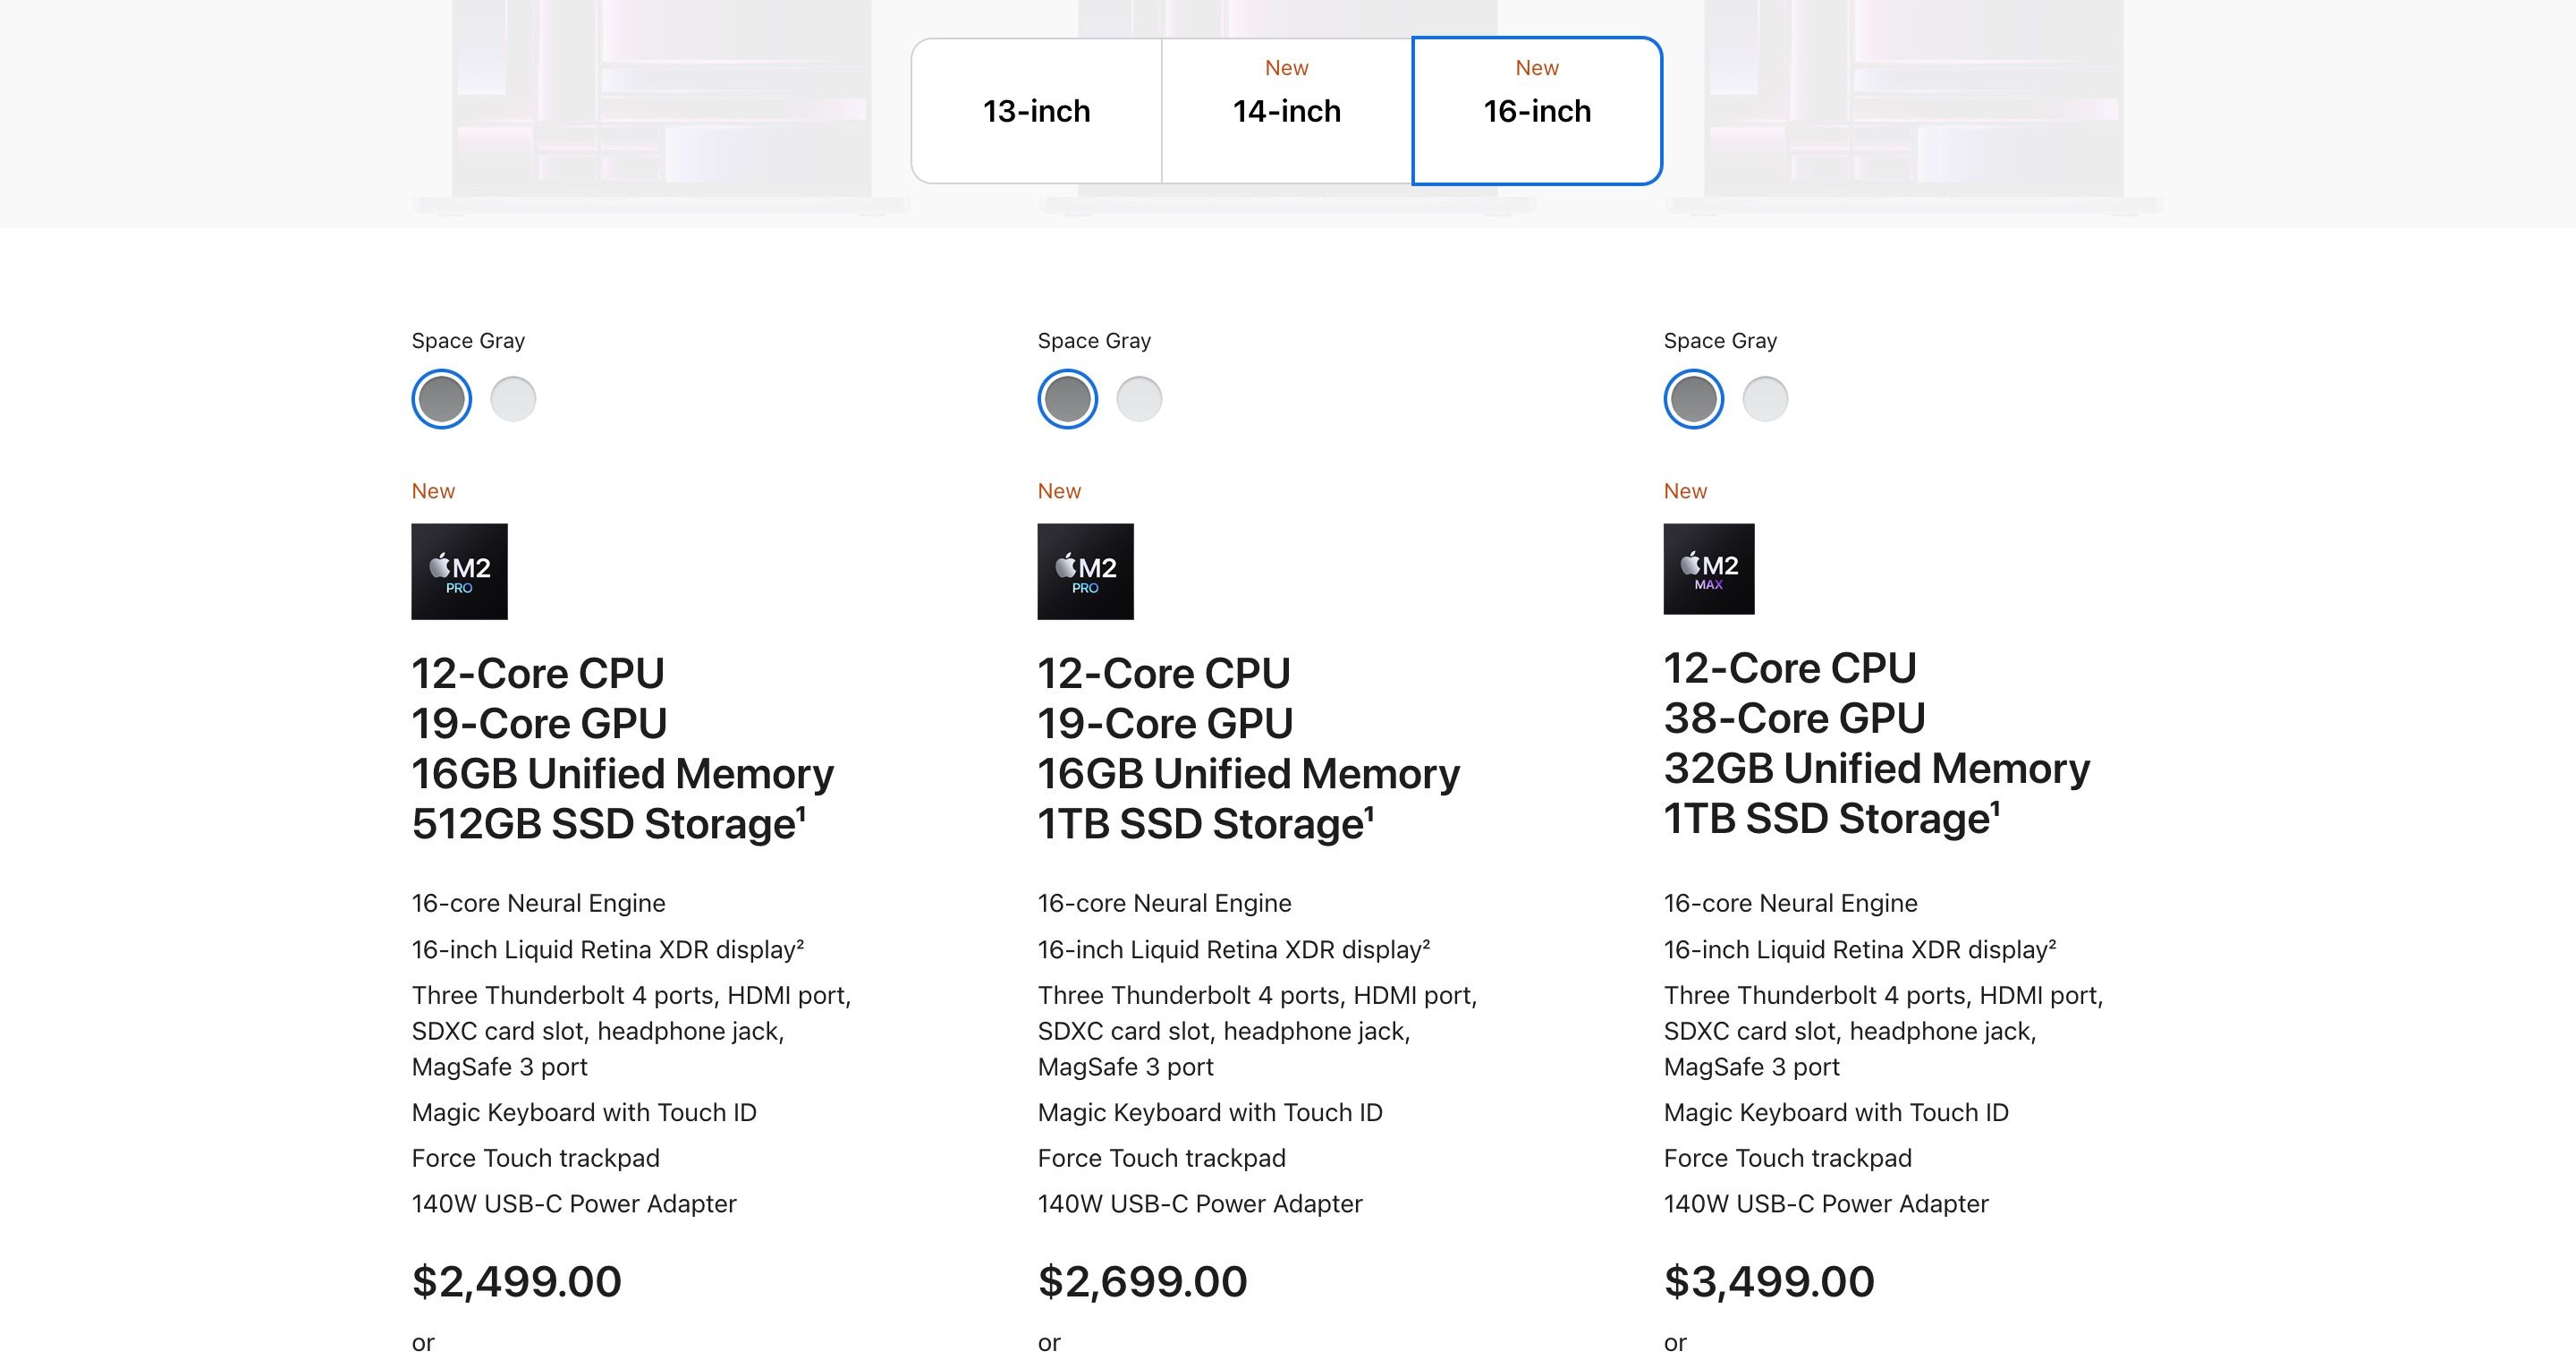 Choosing MacBook based on storage on the Apple website